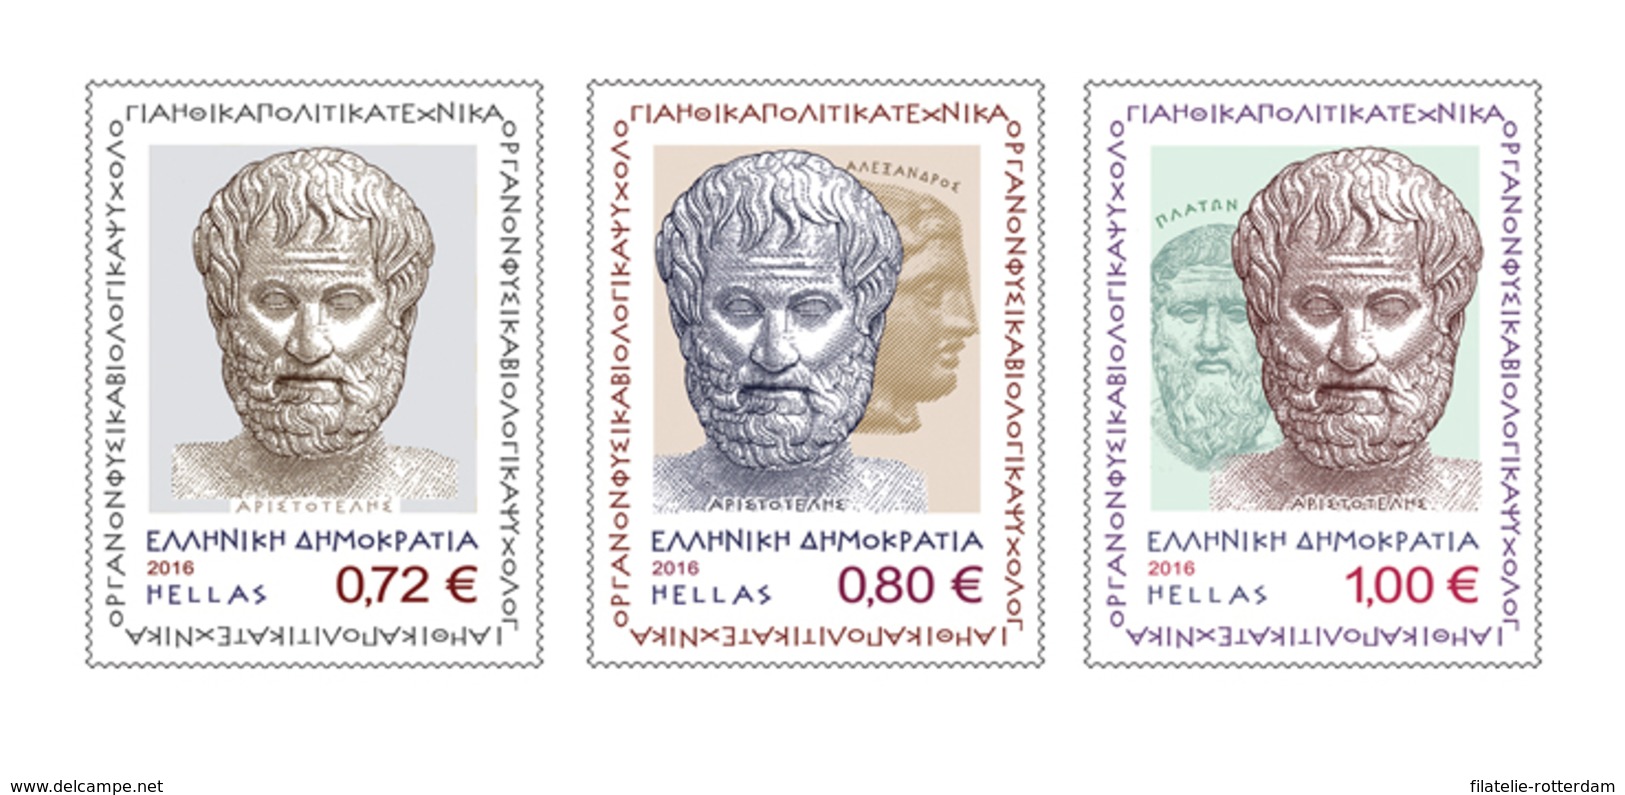 Griekenland / Greece - Postfris / MNH - Complete Set 2400 Jaar Sinds Geboorte Aristoteles 2016 - Ongebruikt